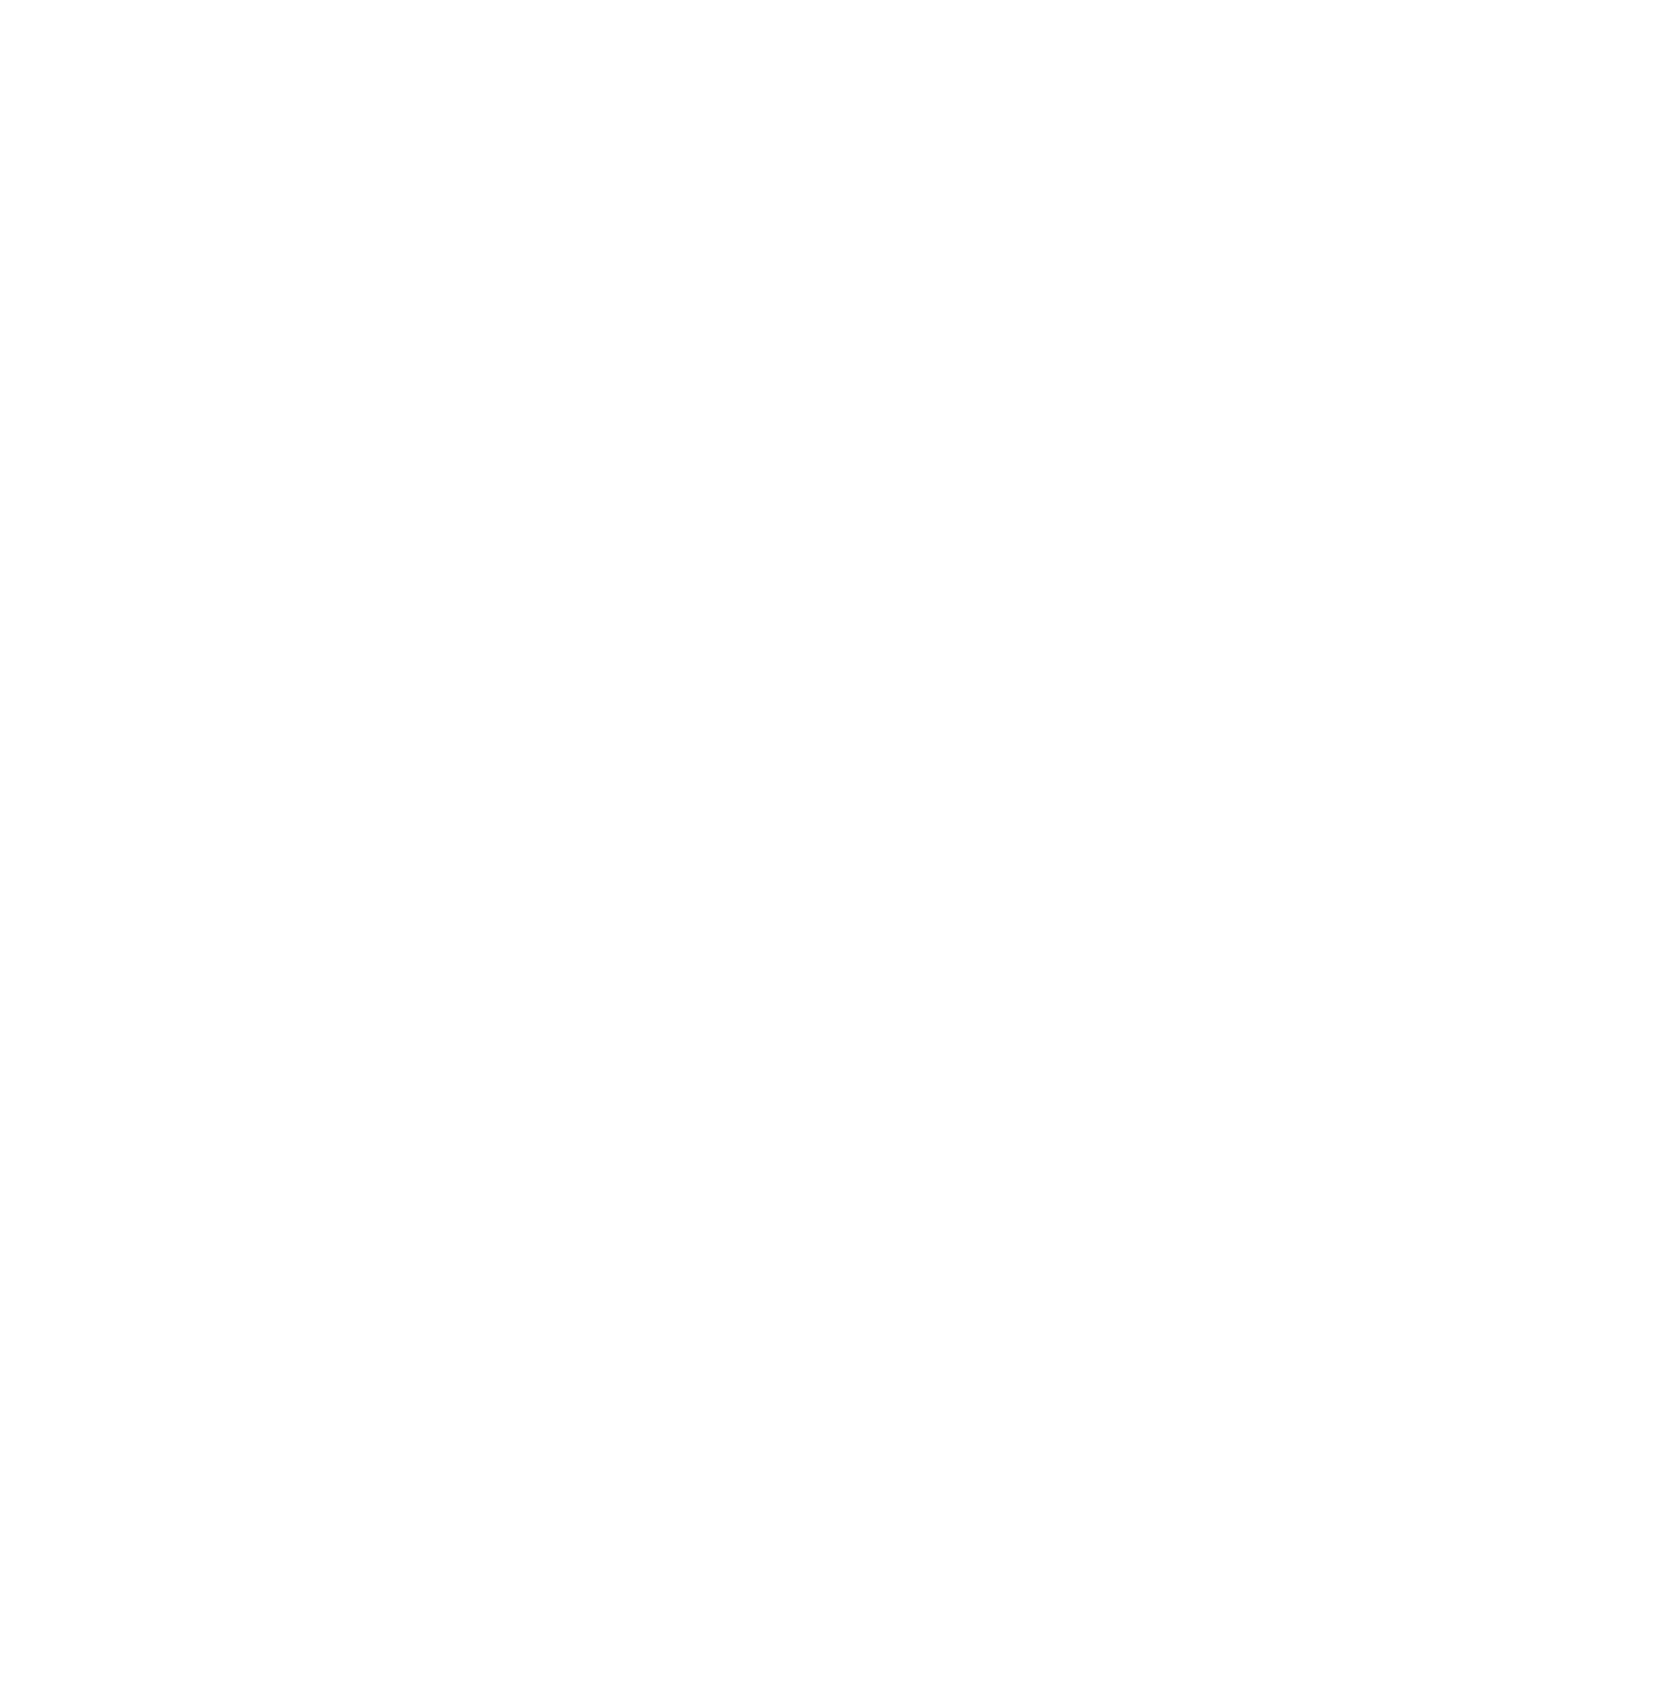 Pepsico logo pour fonds sombres (PNG transparent)